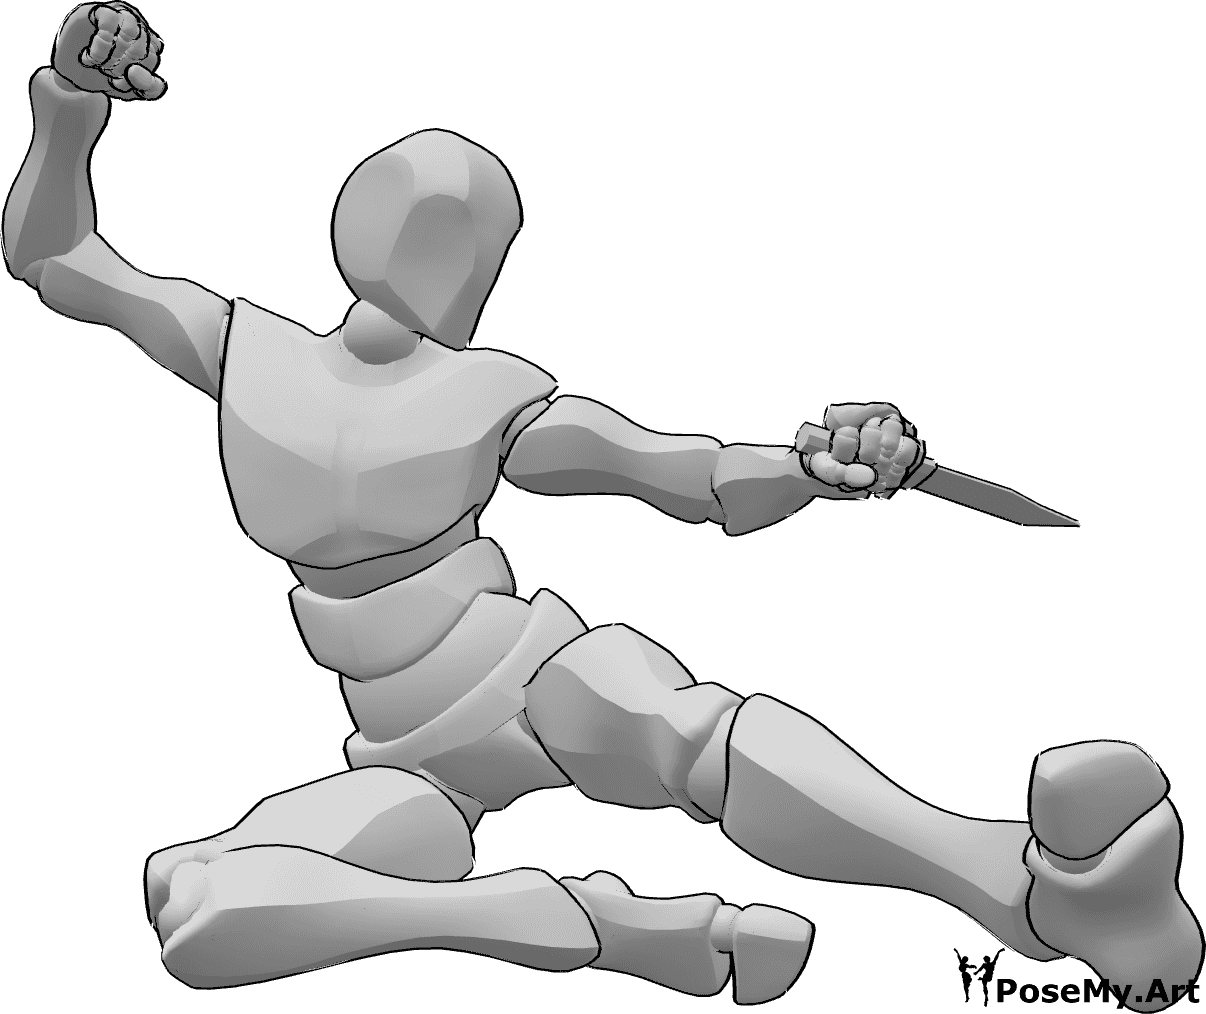 Referência de poses- Pose de ataque com pontapé lateral - Homem está a atacar, saltando alto e dando pontapés laterais, segurando um punhal